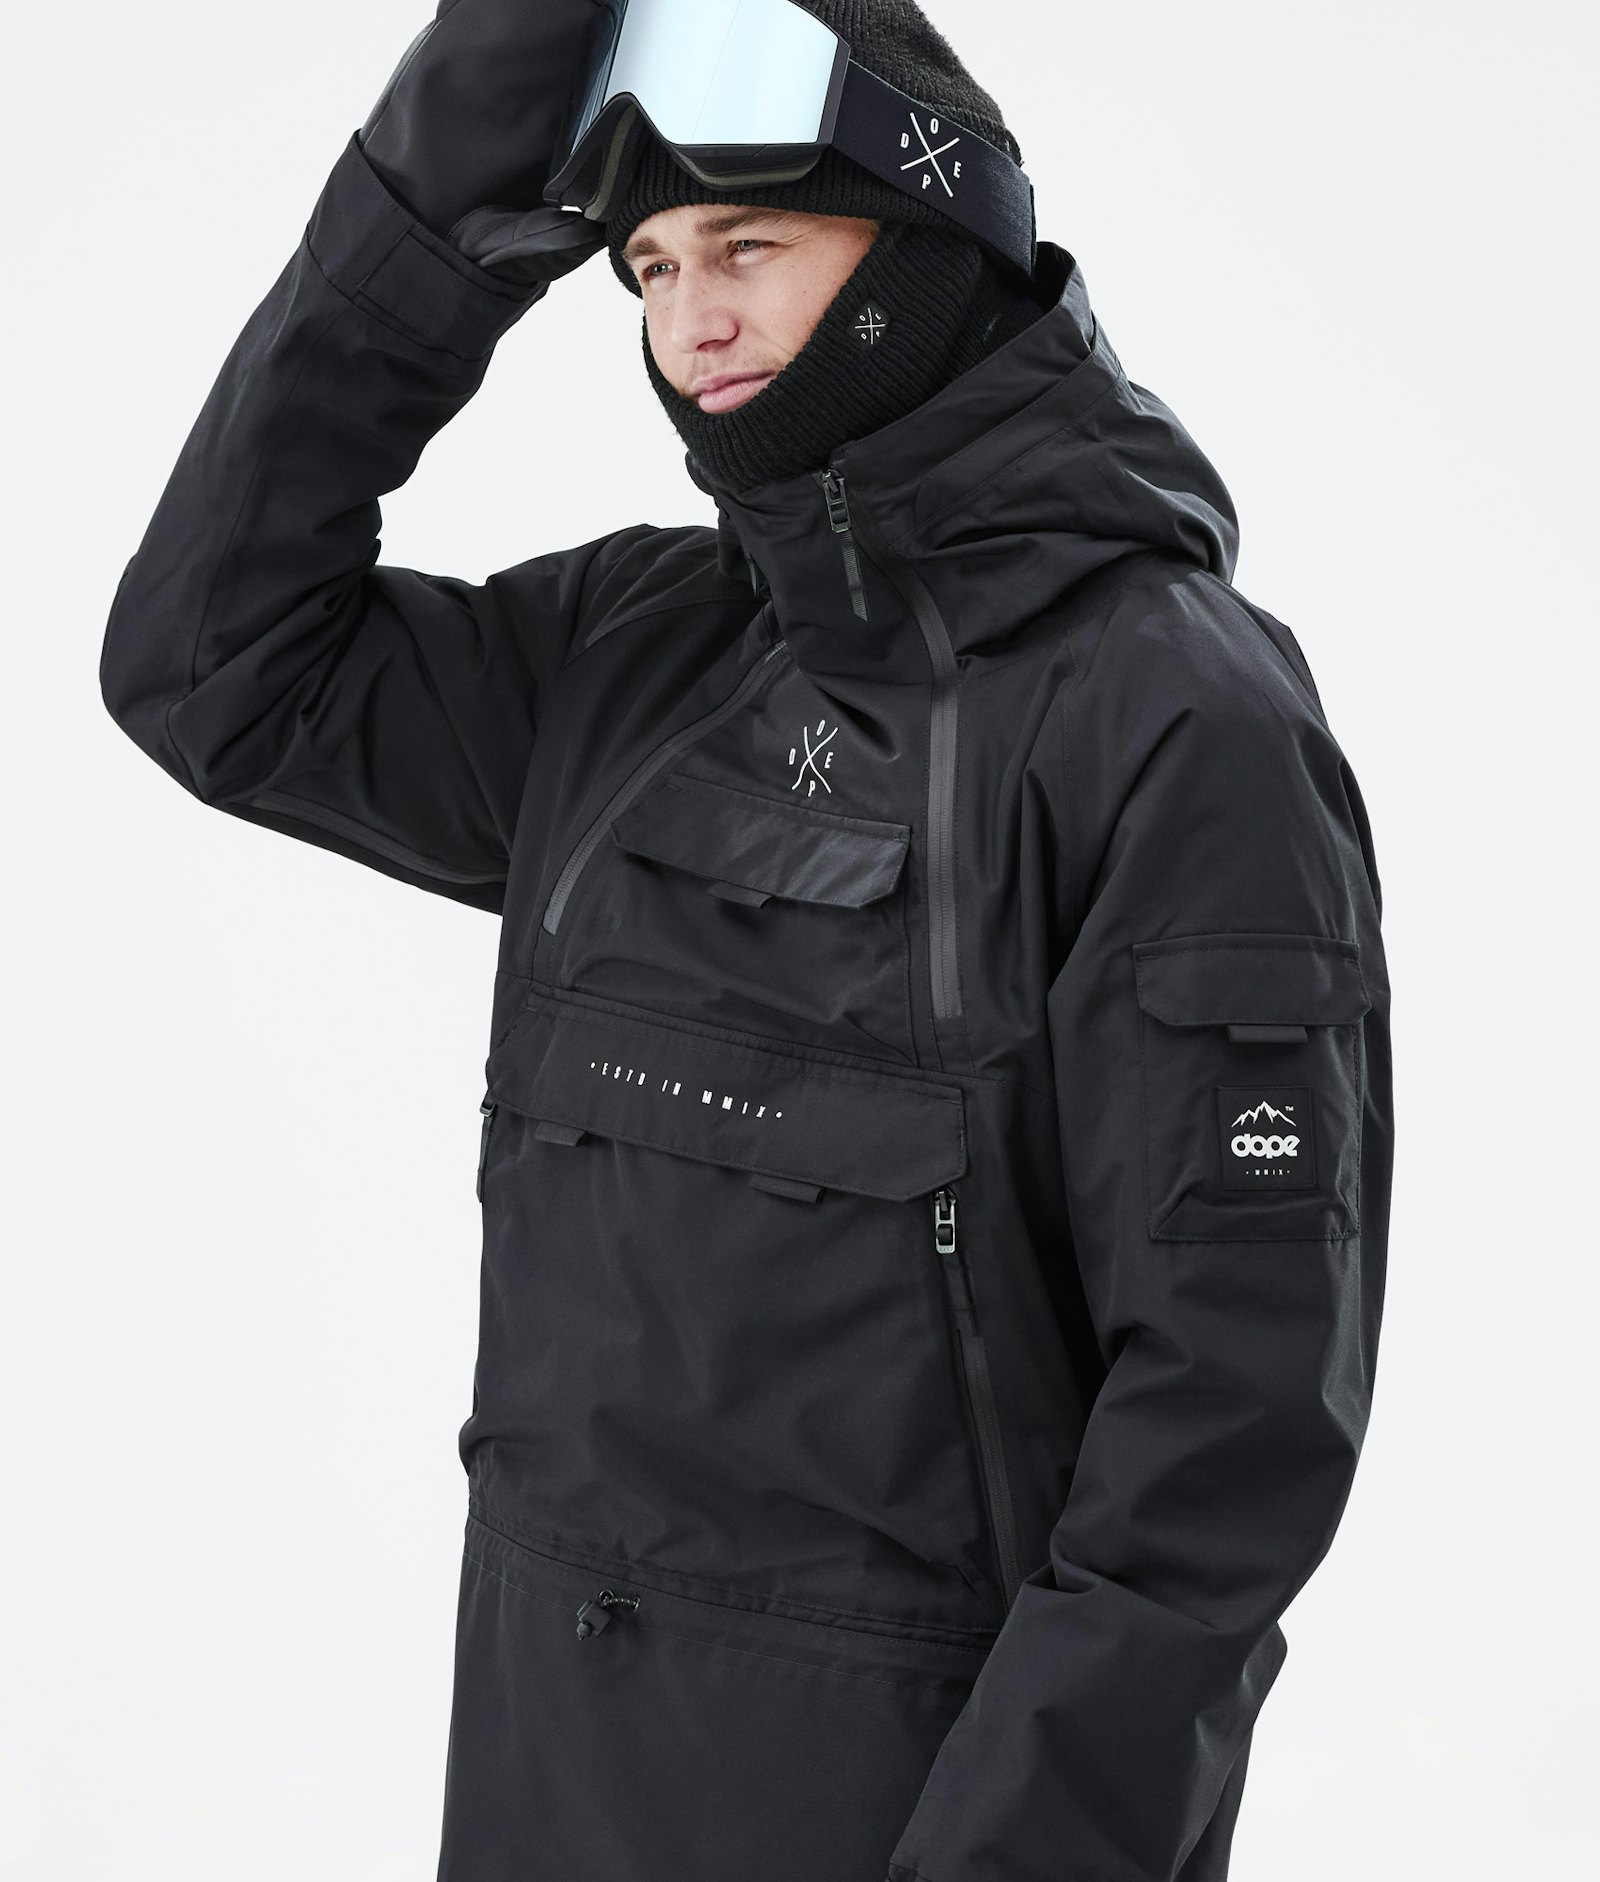 Akin 2021 Snowboard Jacket Men Black Renewed, Image 2 of 9